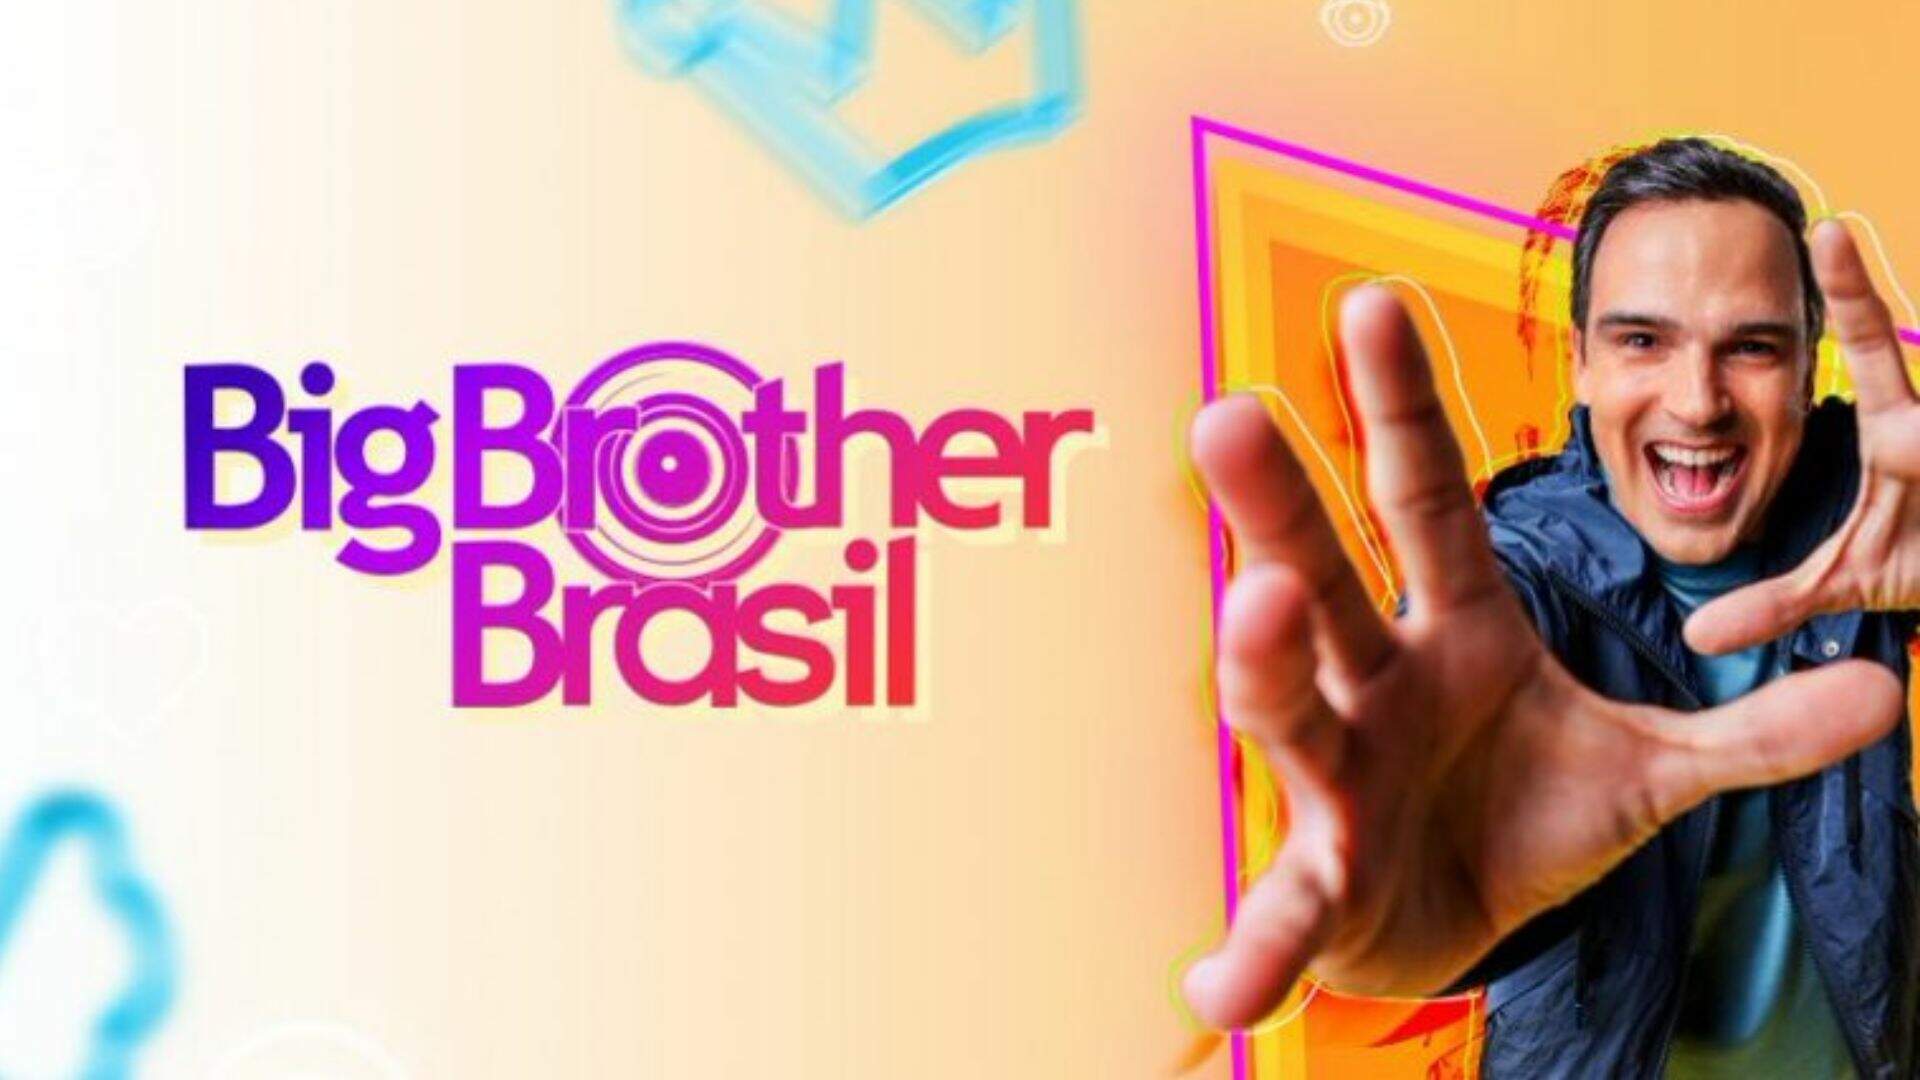 Após ter contrato com a Globo encerrado, ex-BBB entra ao vivo e fala tudo o que não podia - Metropolitana FM